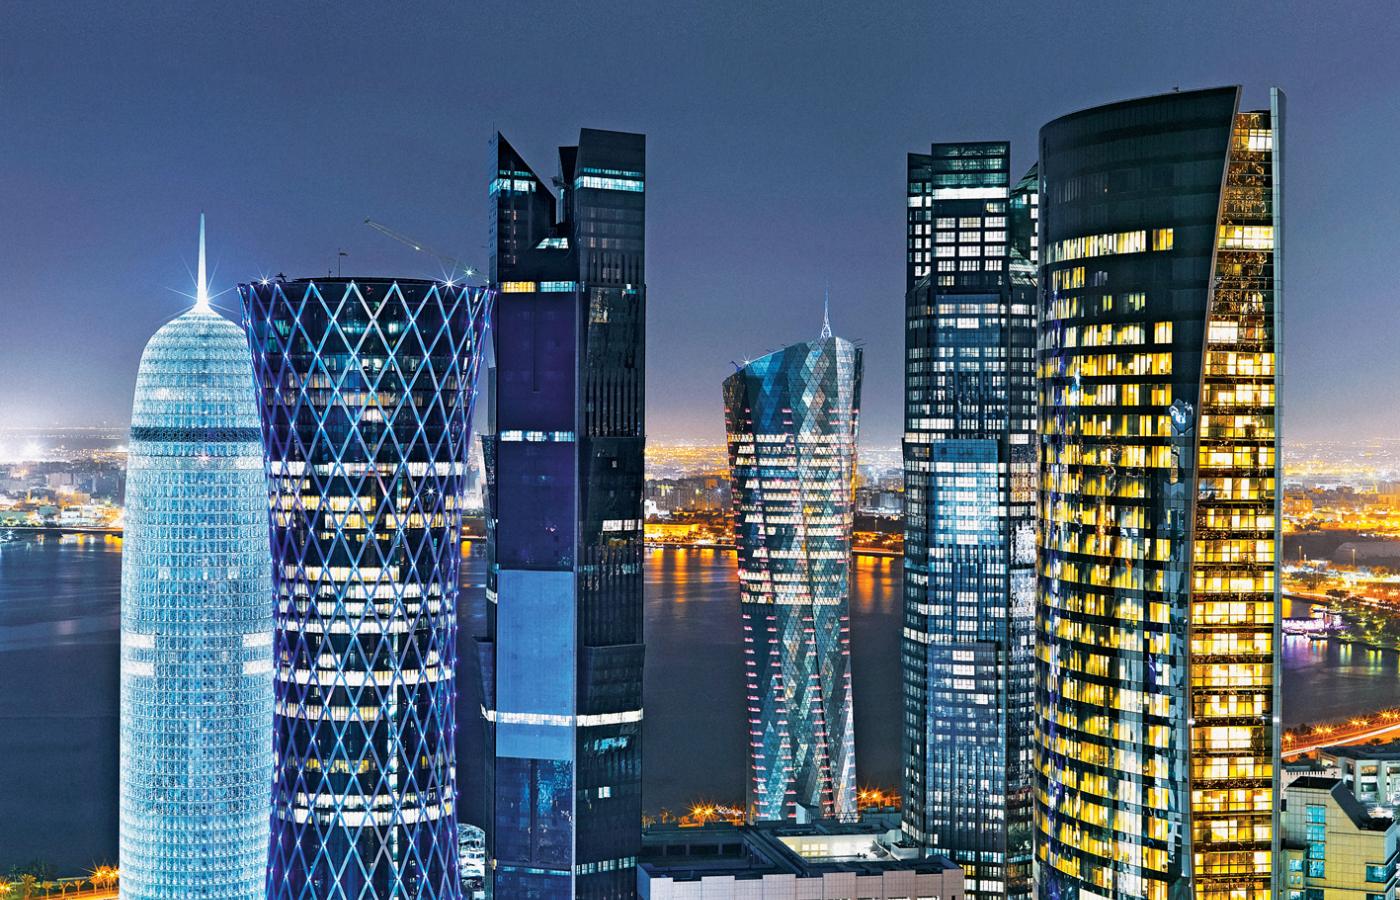 Dauha – imponująca stolica Kataru.